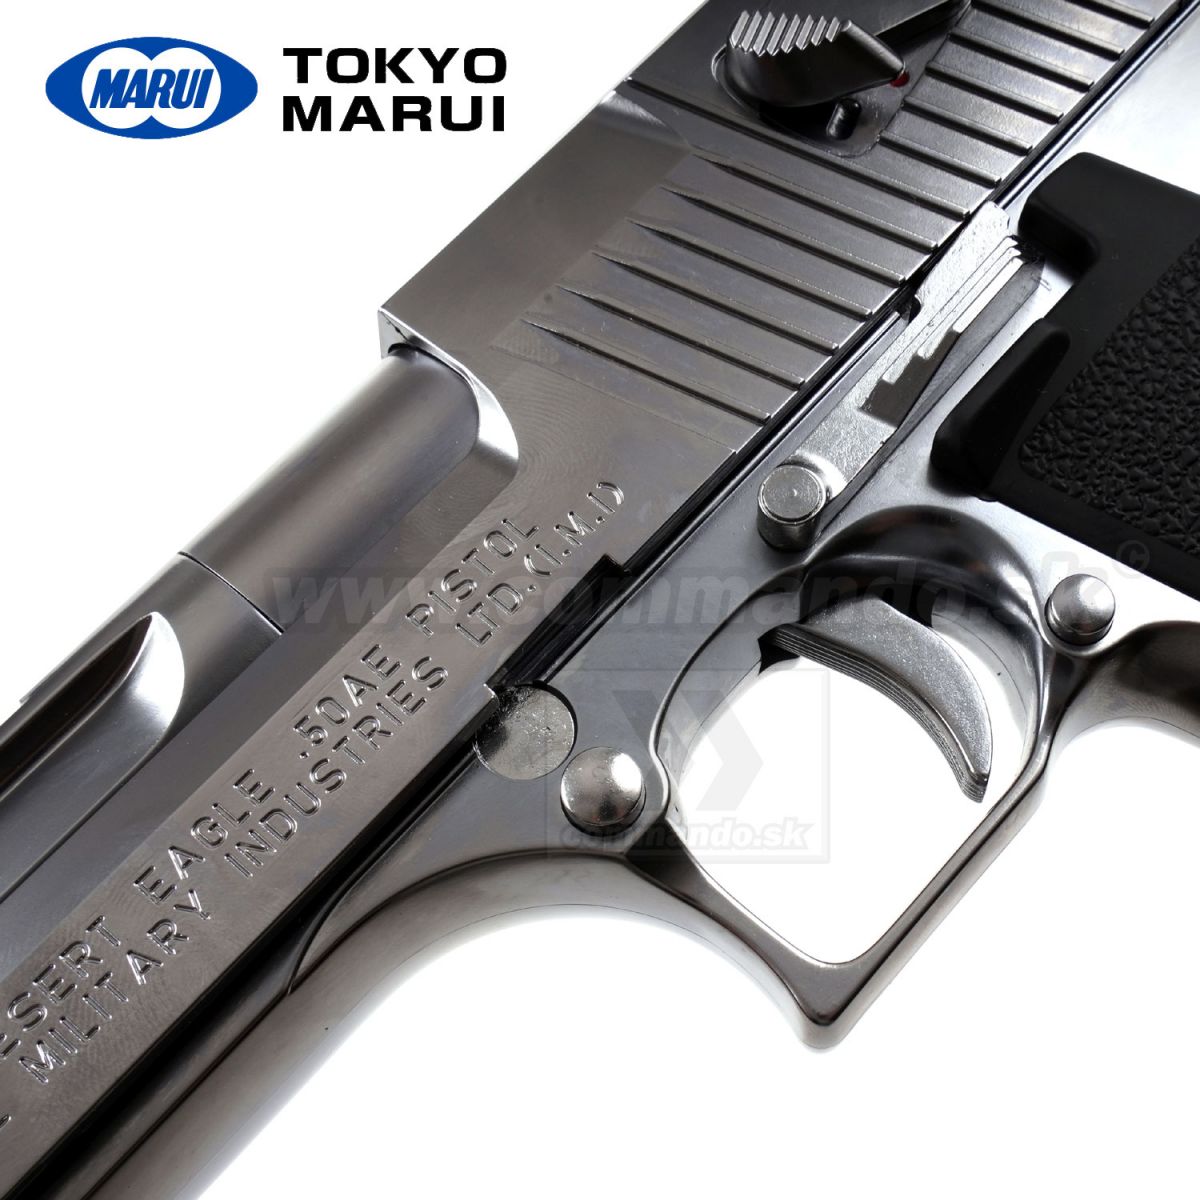 Tokyo Marui No. 16 Desert Eagle.50 AE Chrome Stainless Steel Gas blow back  Airsoft Gun - Airsoft Shop Japan